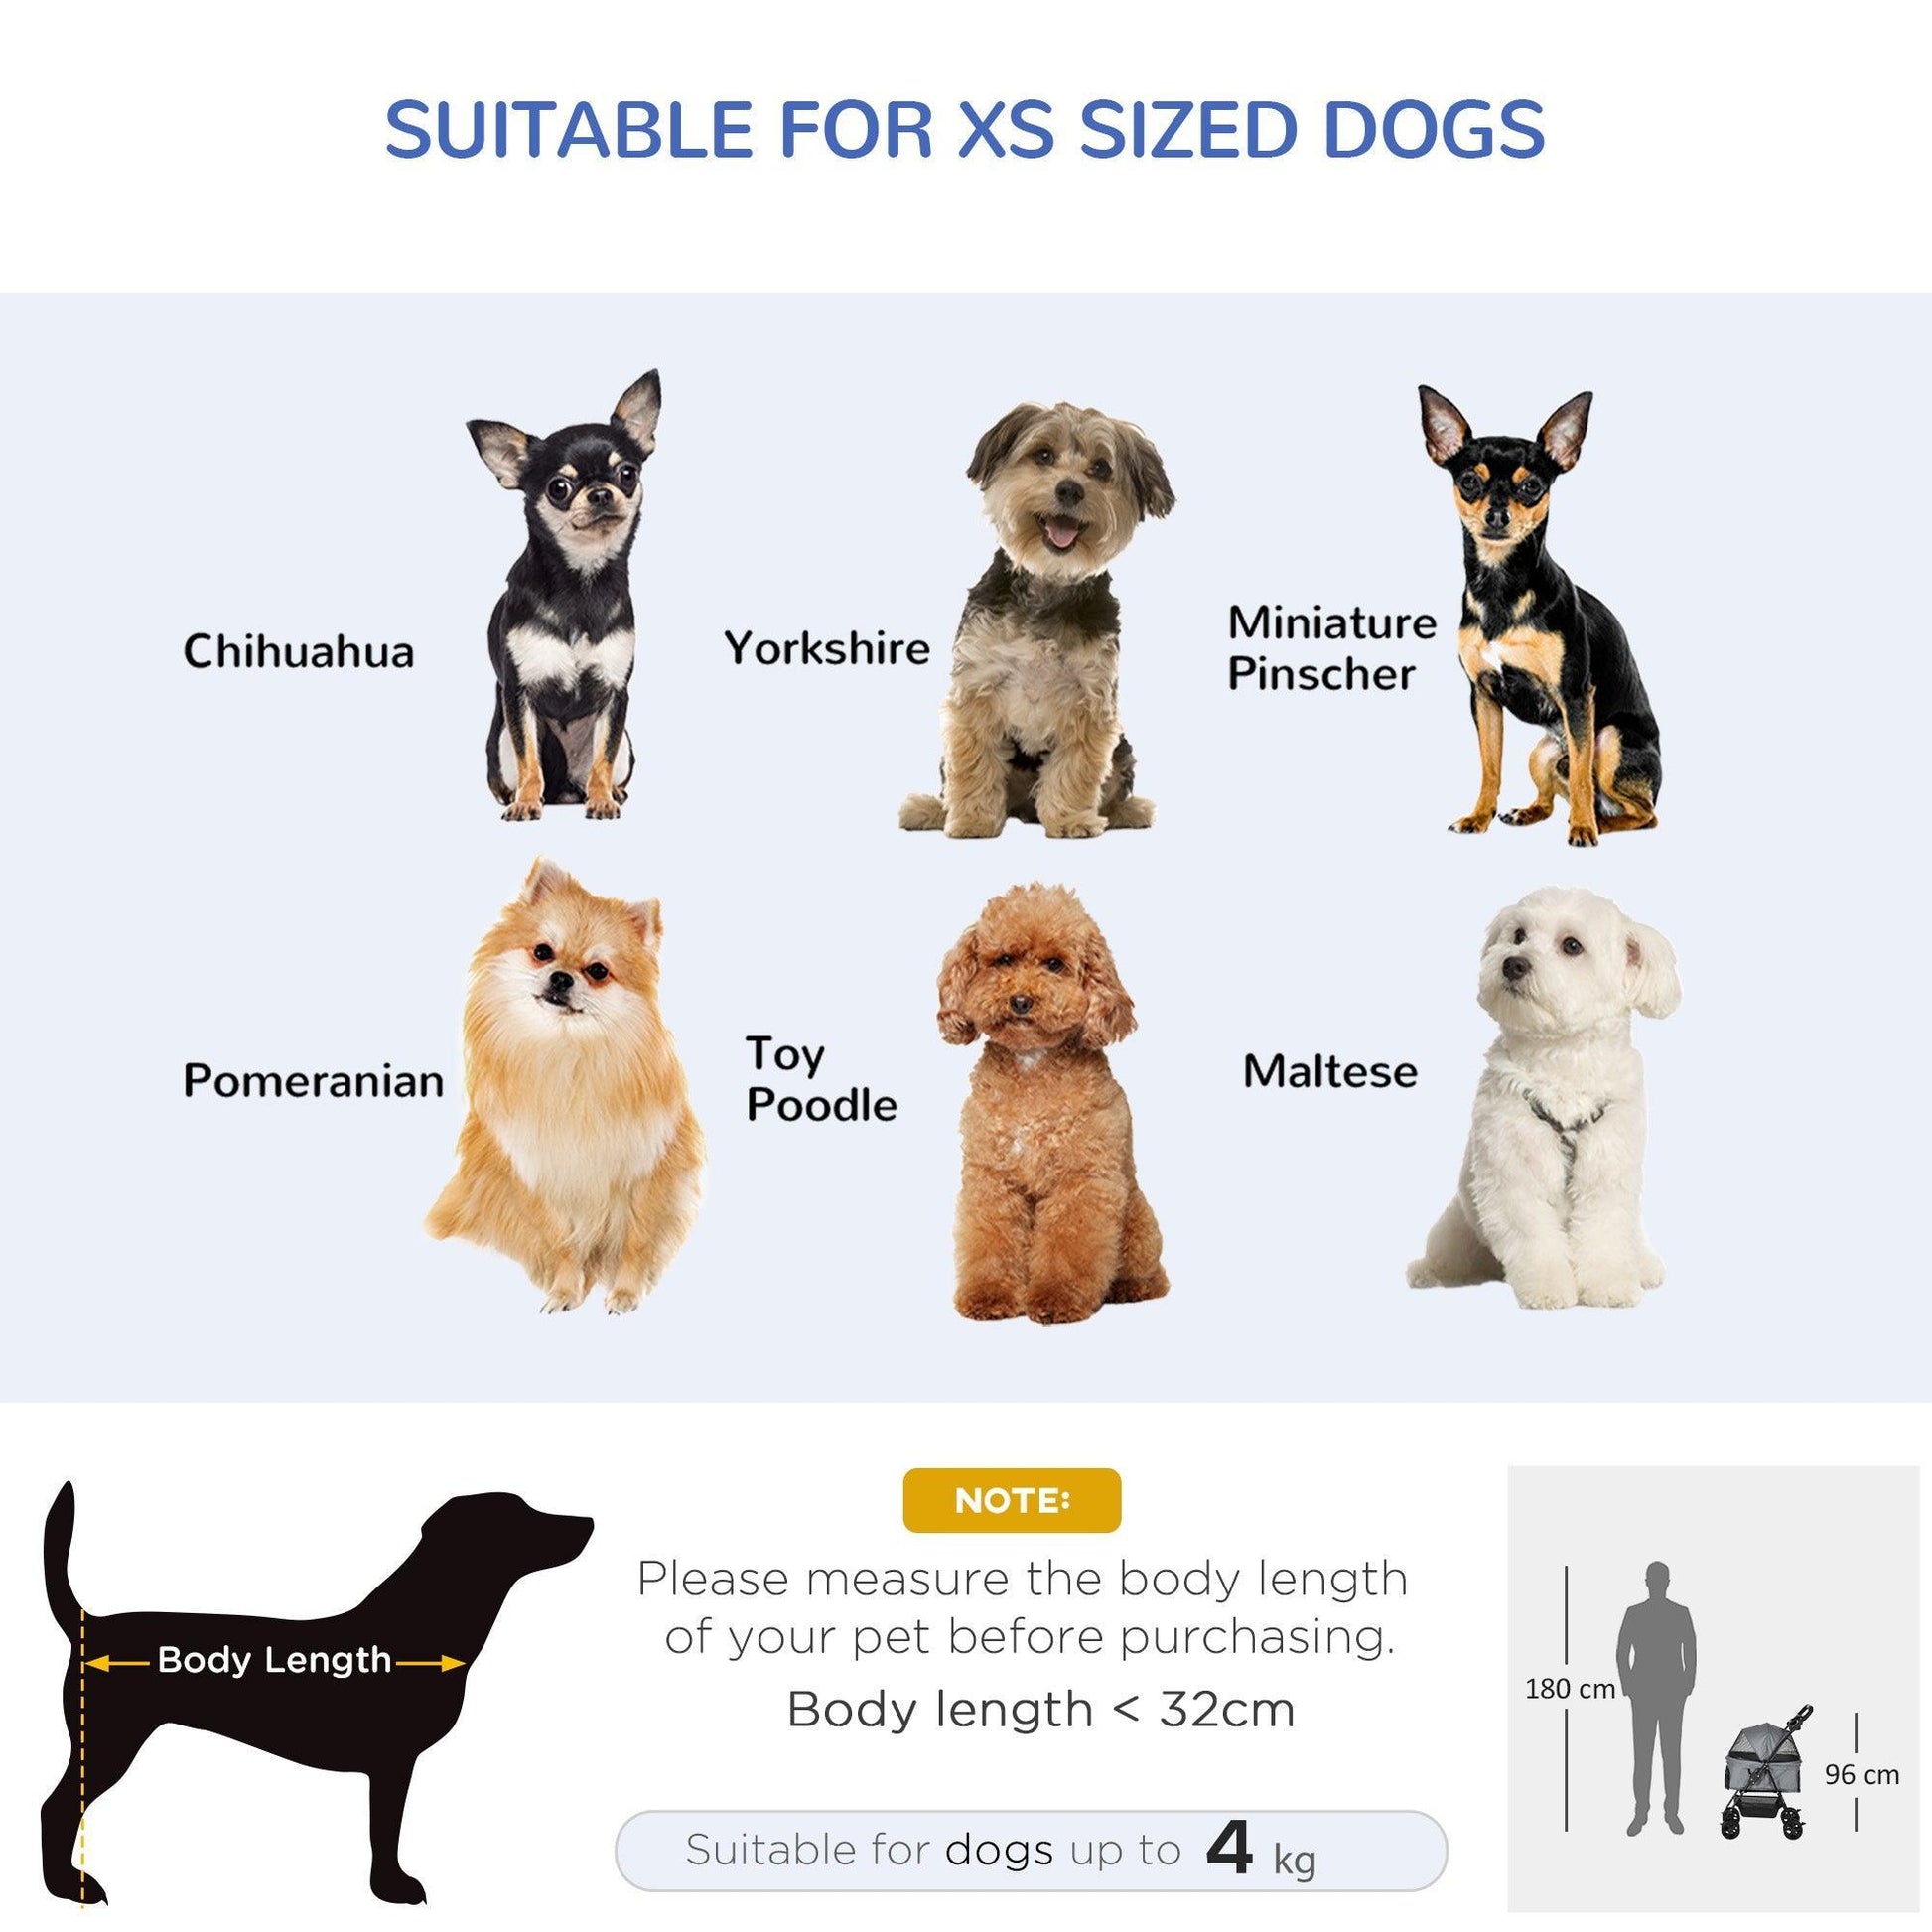 PawHut Grey Dog Stroller: Easy-Fold Jogger - ALL4U RETAILER LTD